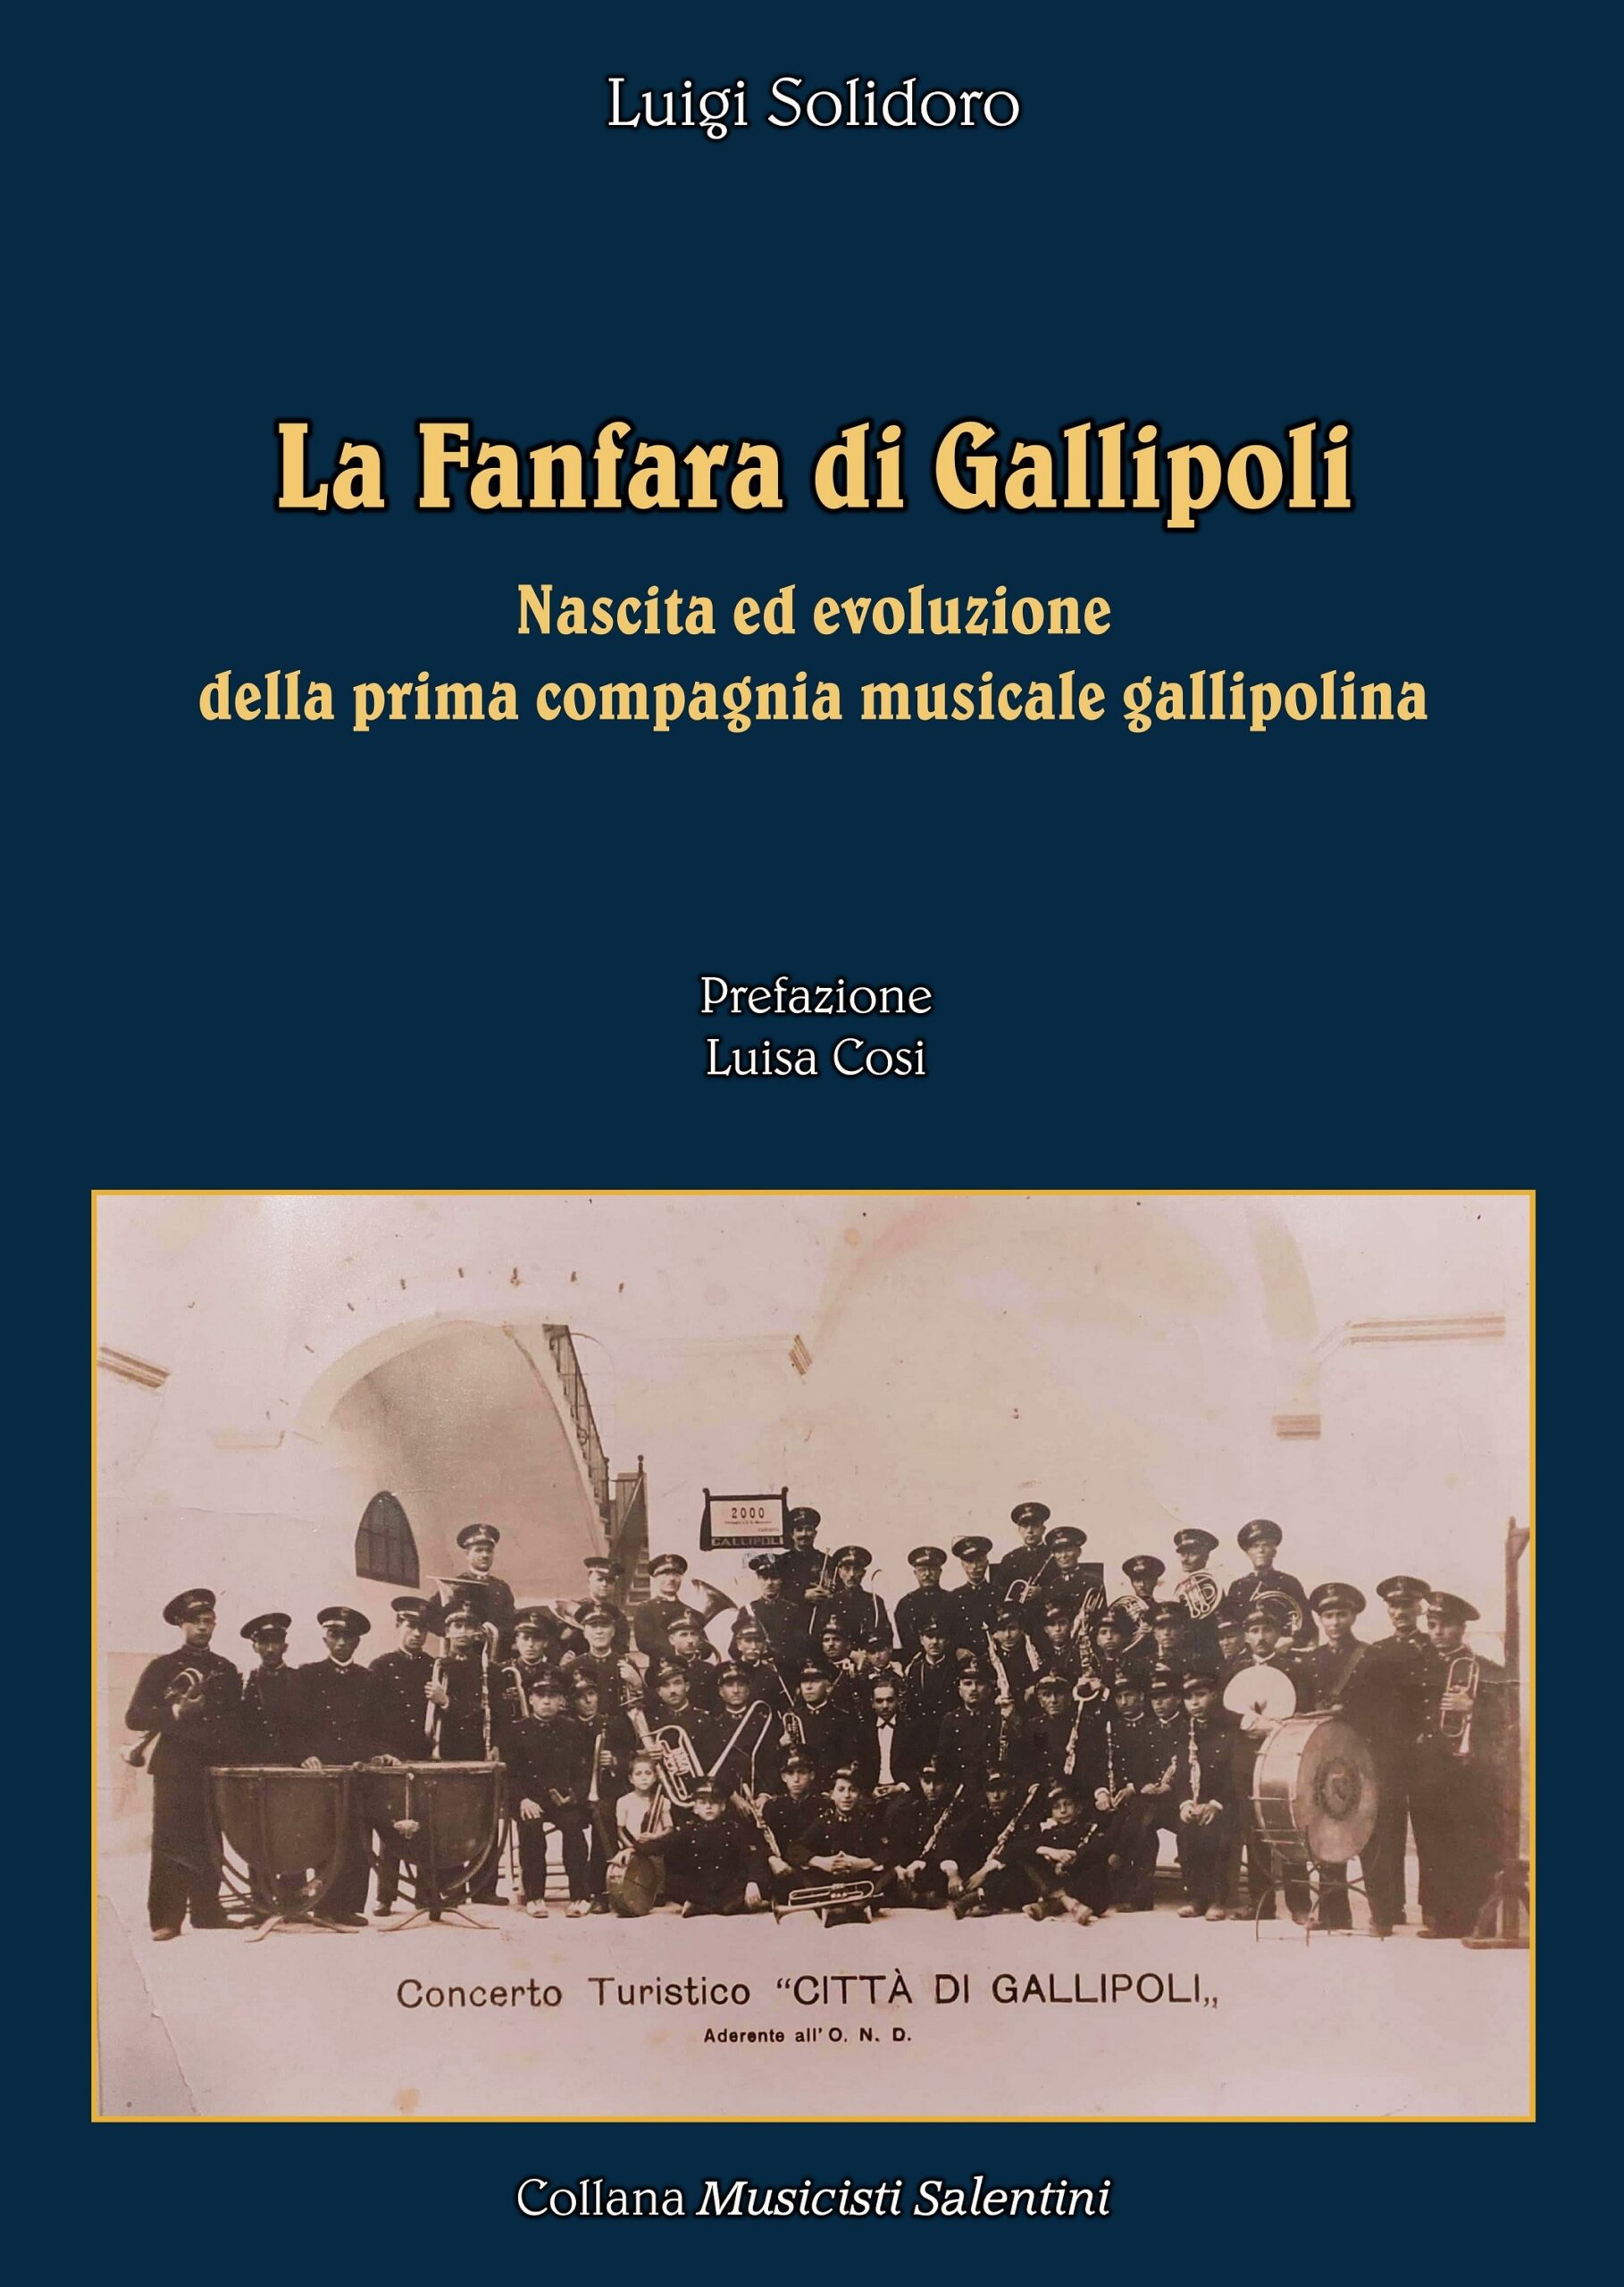 copertina del libro di Luigi Solidoro La Fanfara di Gallipoli